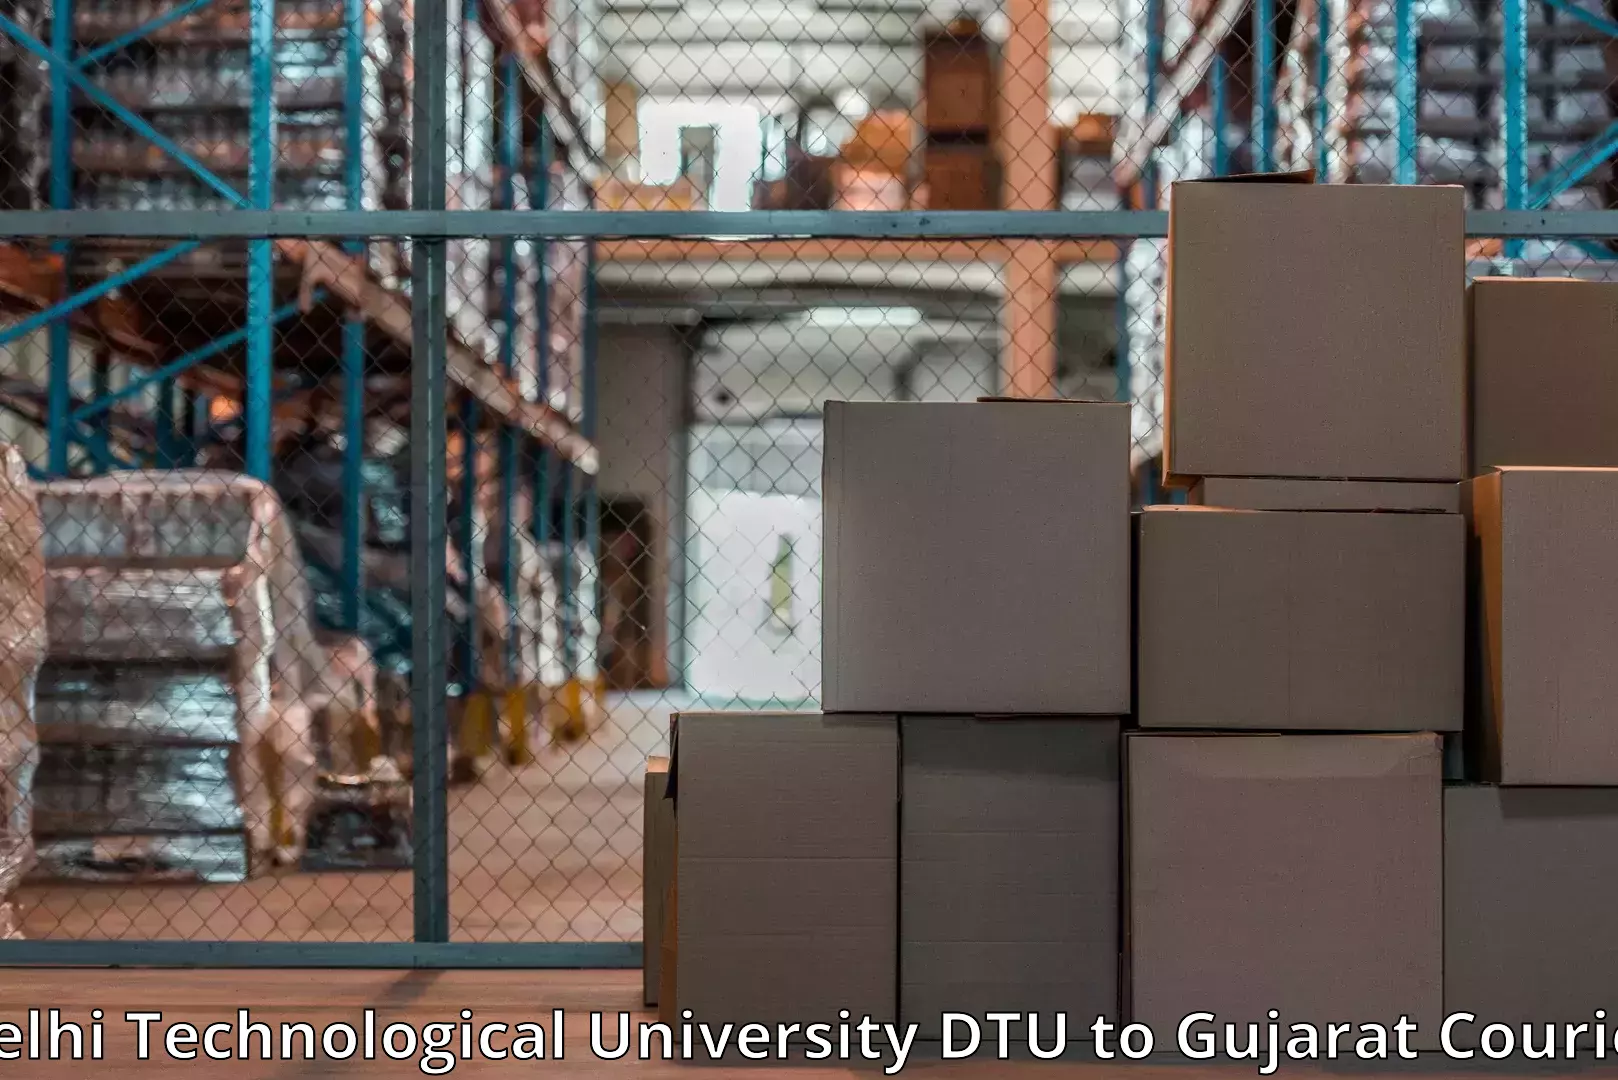 Furniture transport experts Delhi Technological University DTU to Bhesan